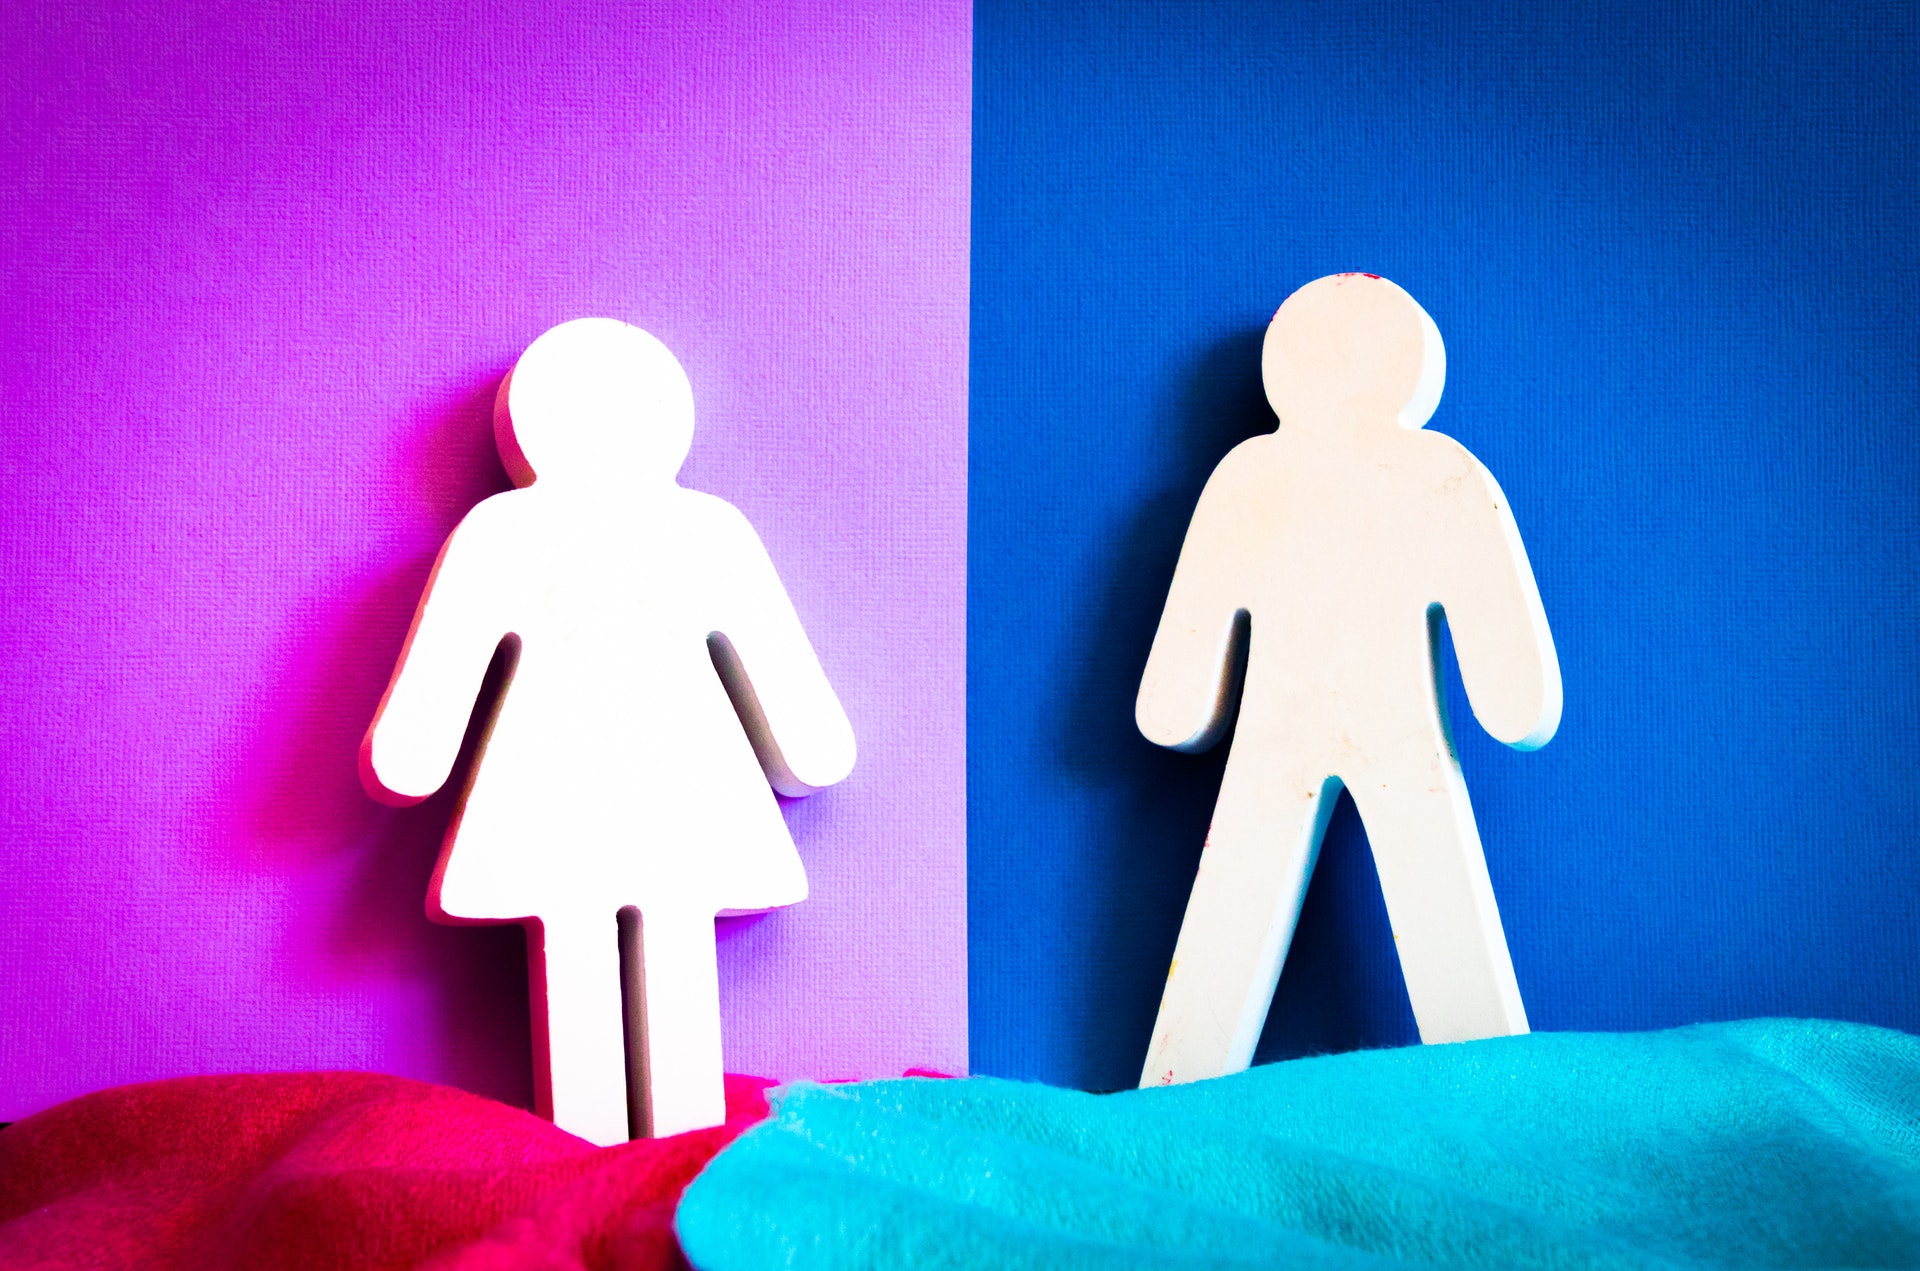 Pandangan mengenai gender: Laki-laki vs perempuan